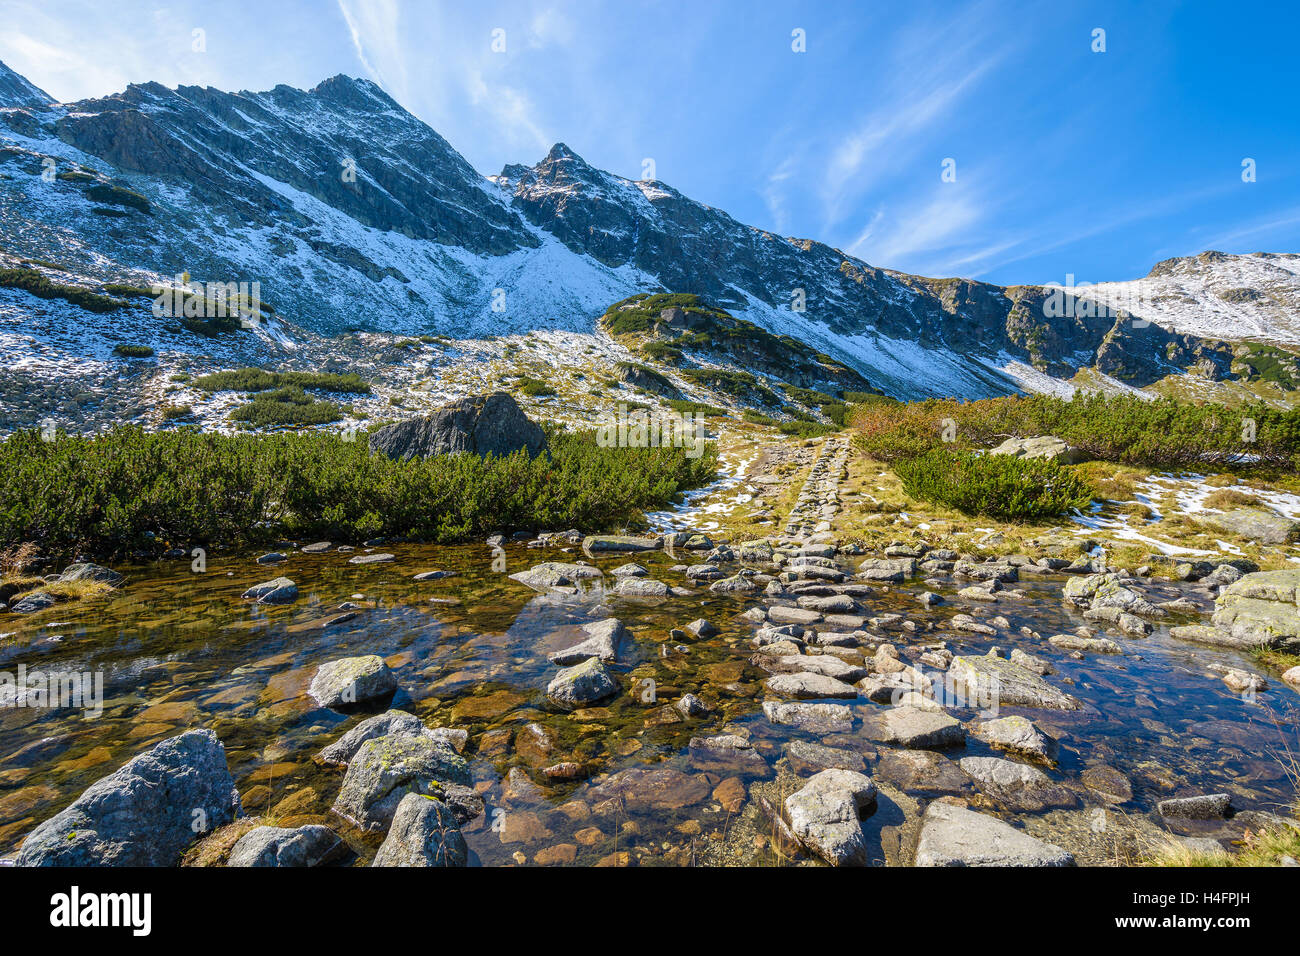 Flusso di acqua sul sentiero escursionistico nella valle Gasienicowa nella stagione autunnale, Alti Tatra, Polonia Foto Stock